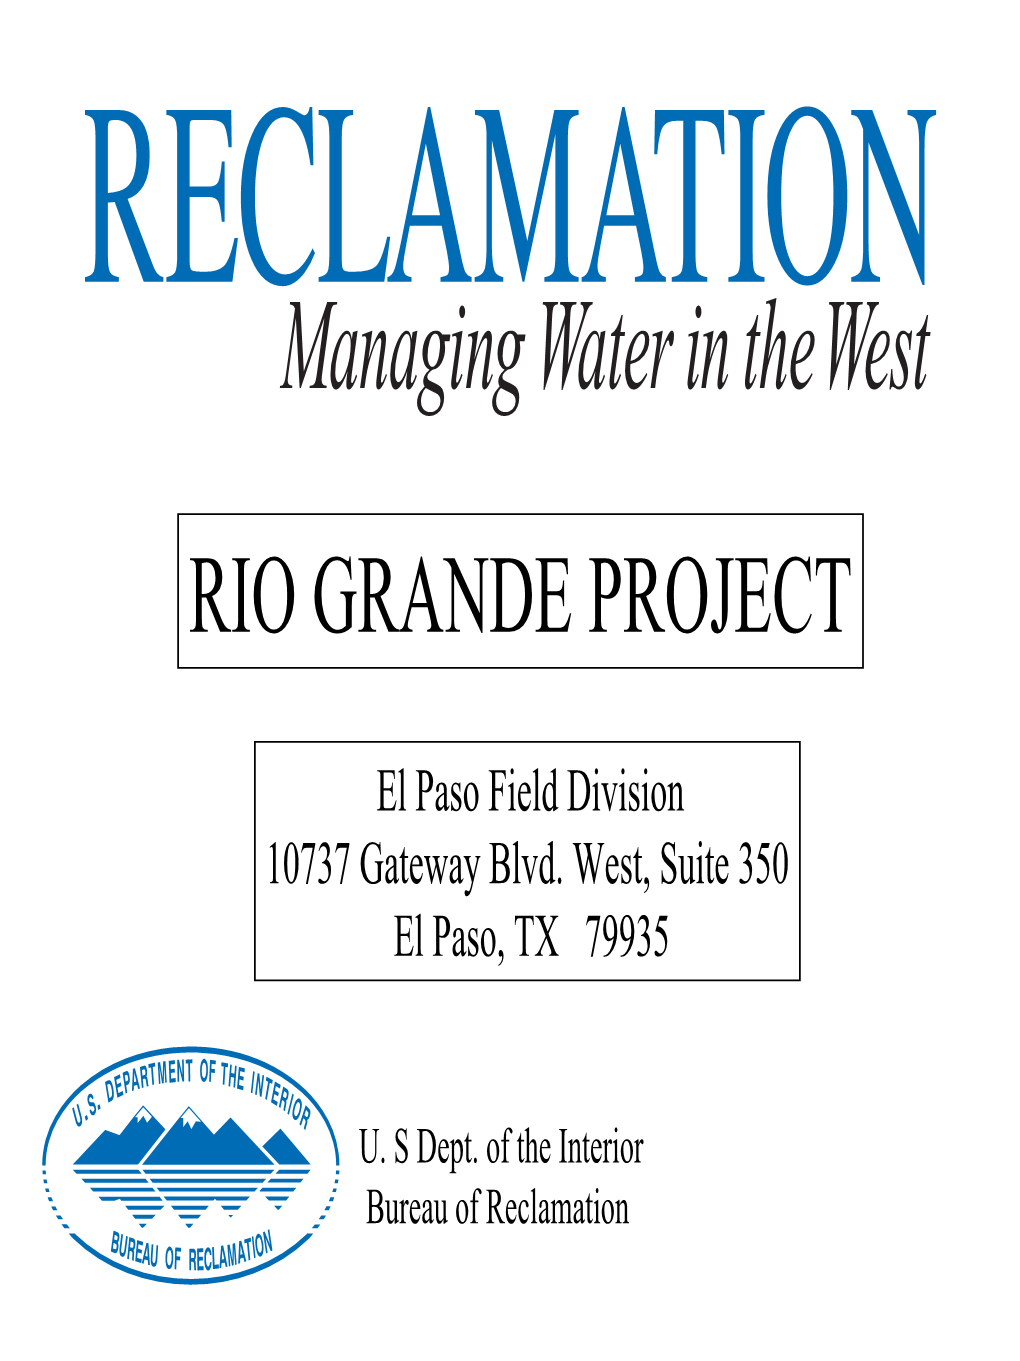 Rio Grande Project